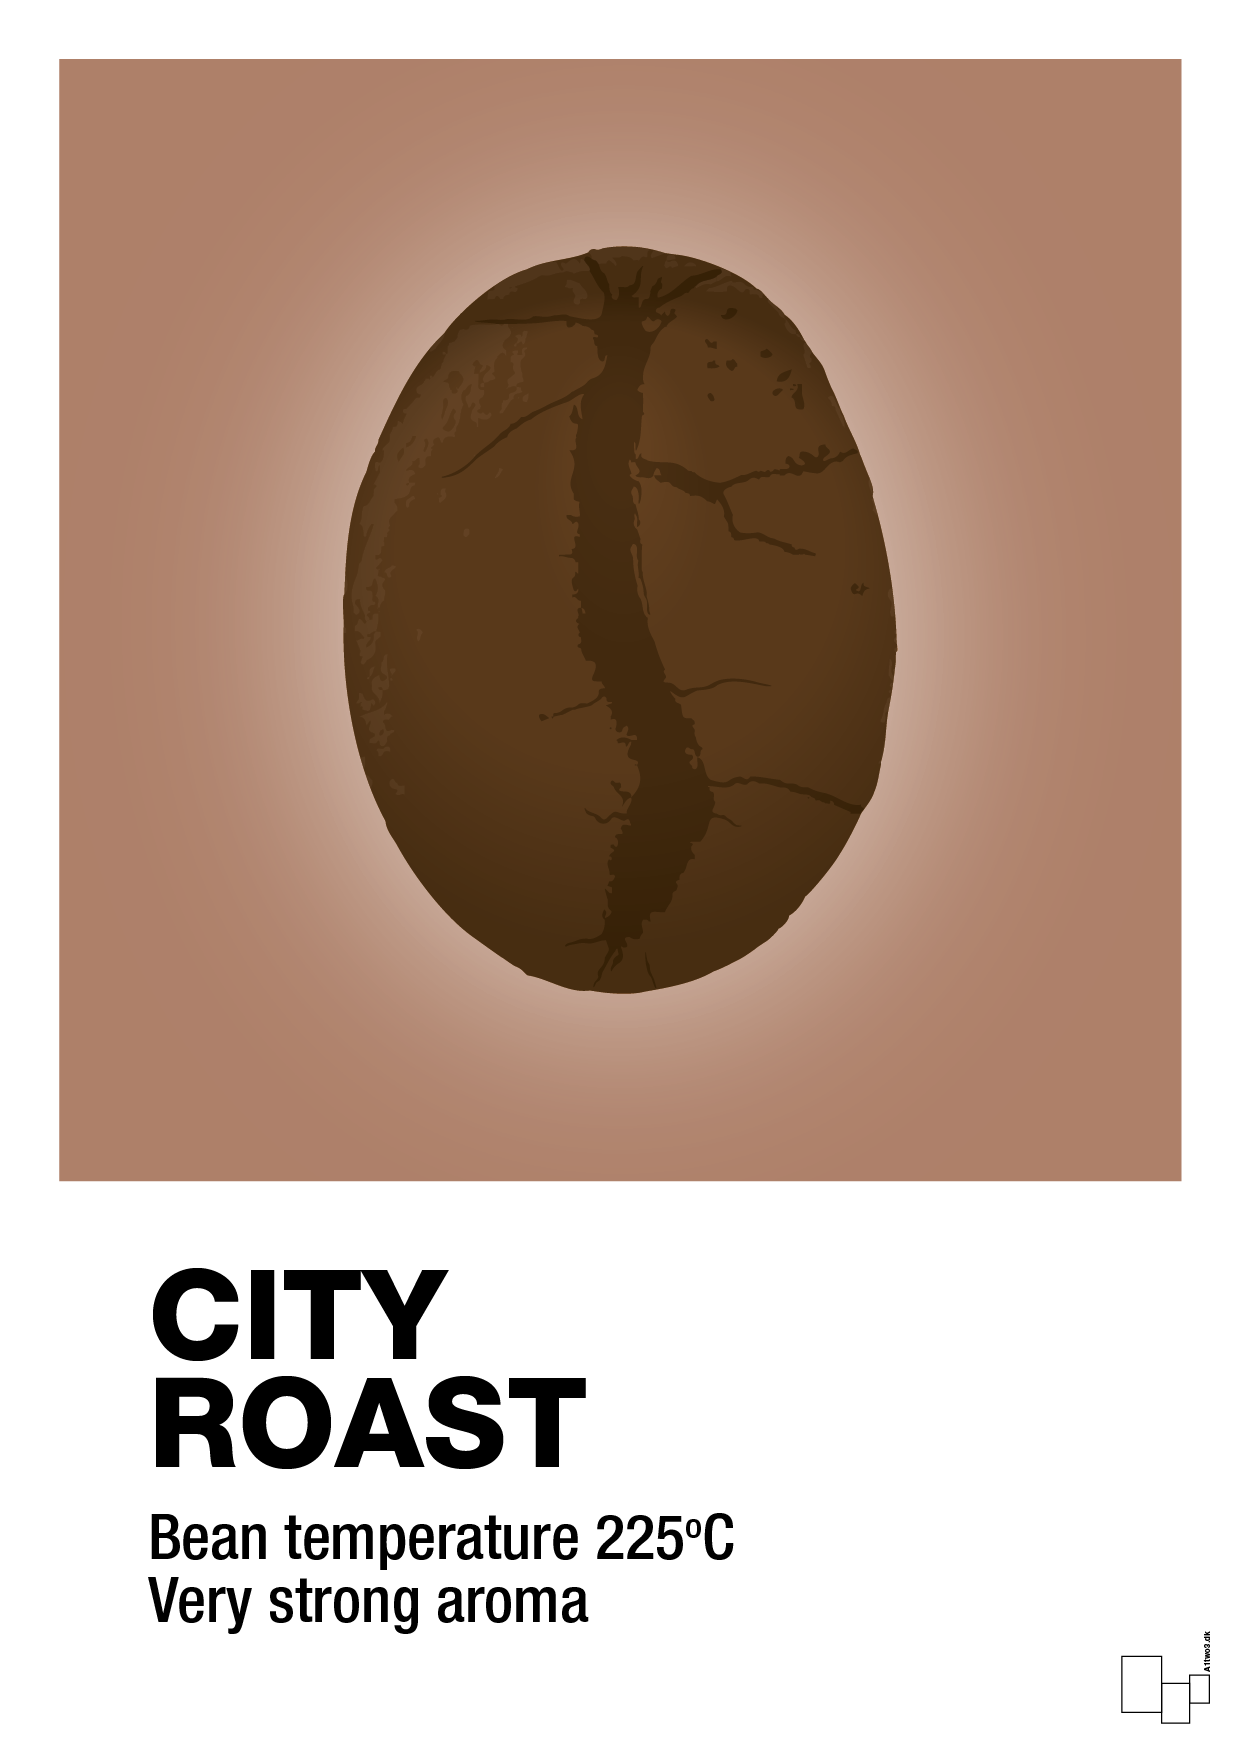 city roast - Plakat med Mad & Drikke i Cider Spice